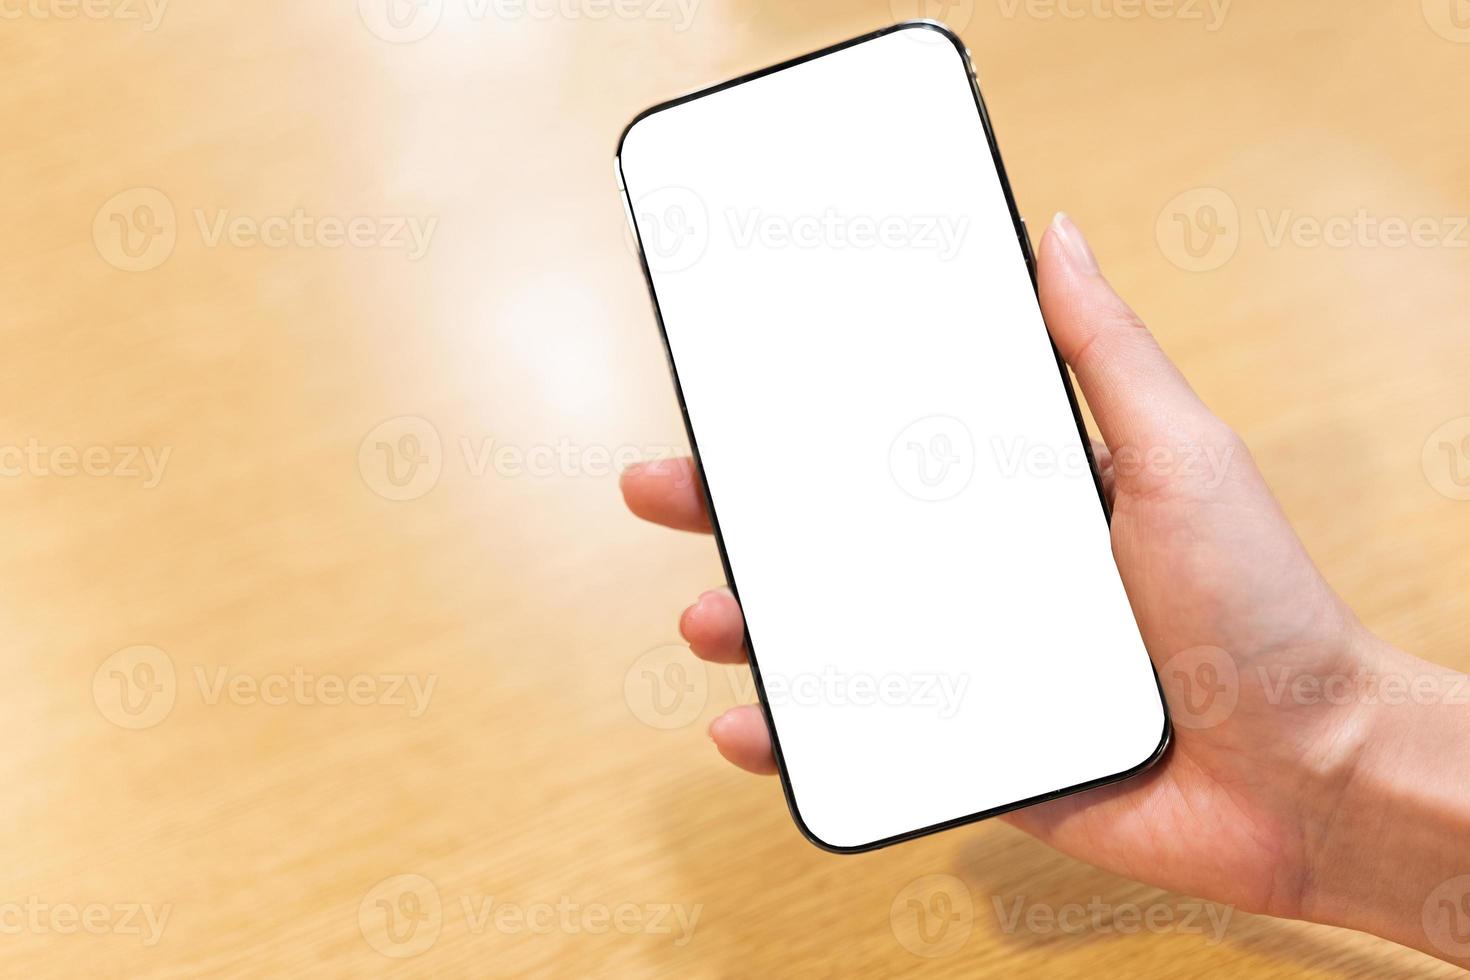 nuevo modelo de smartphone con pantalla completa en la mano derecha de la mujer. cierre la mano que sostiene el teléfono inteligente negro con pantalla blanca. foto